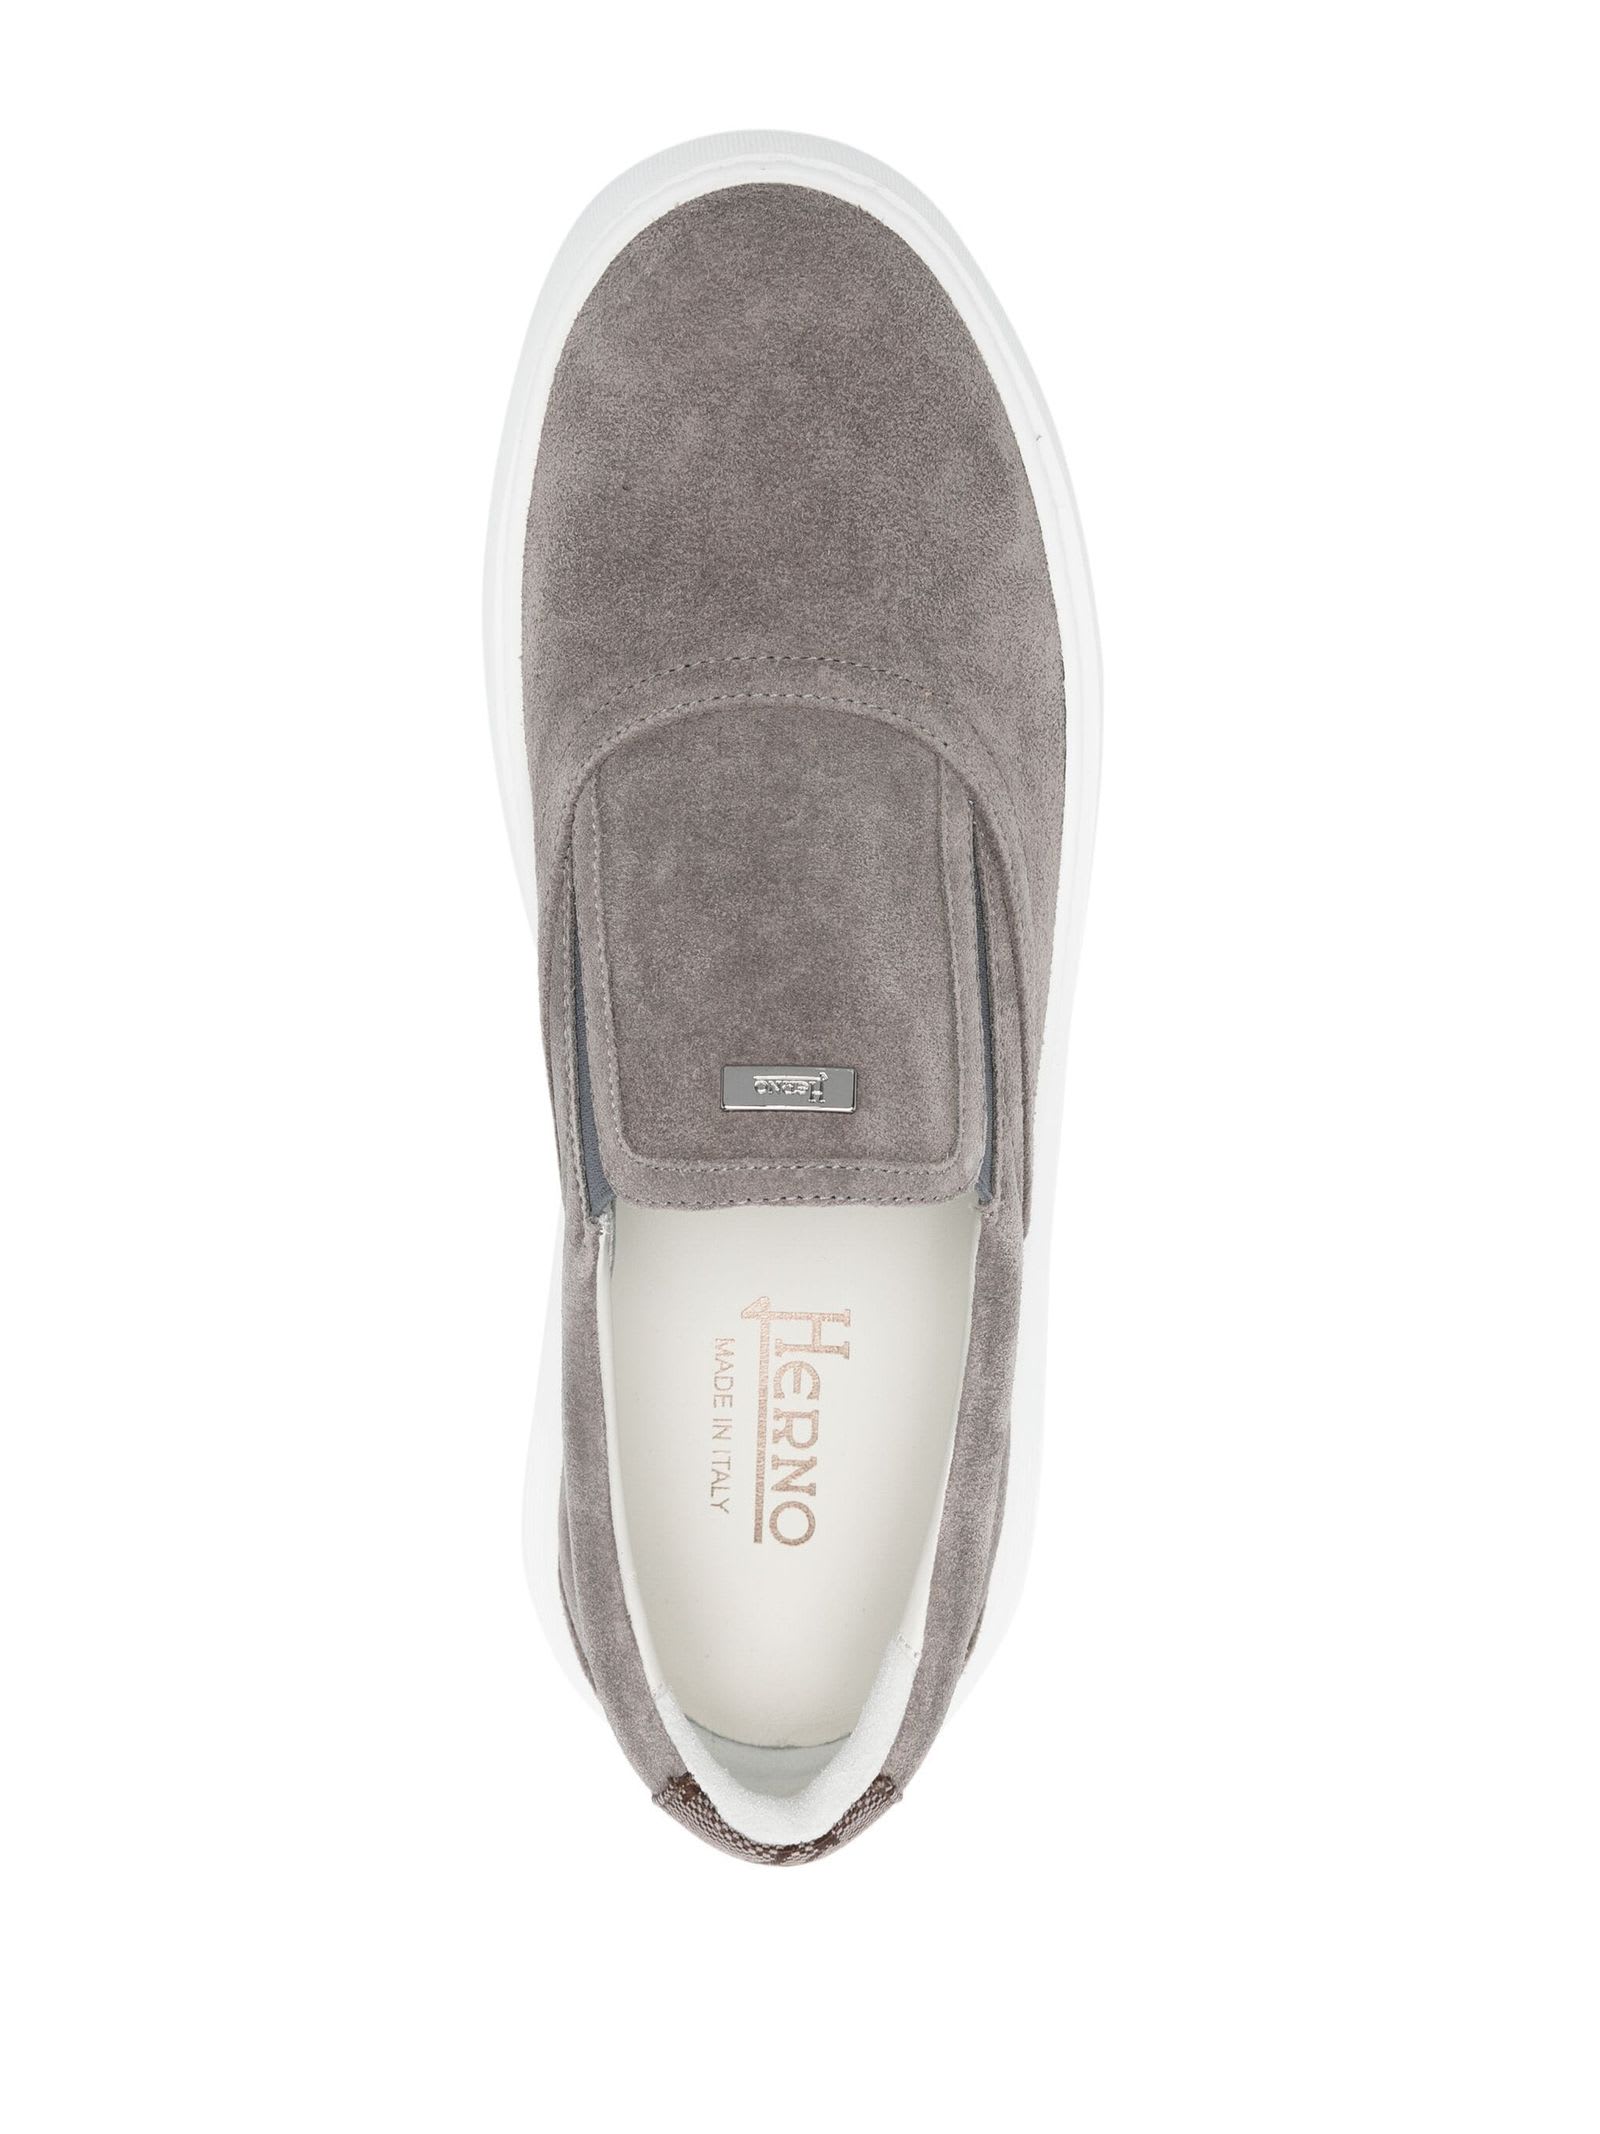 Shop Herno Grey Suede Sneakers